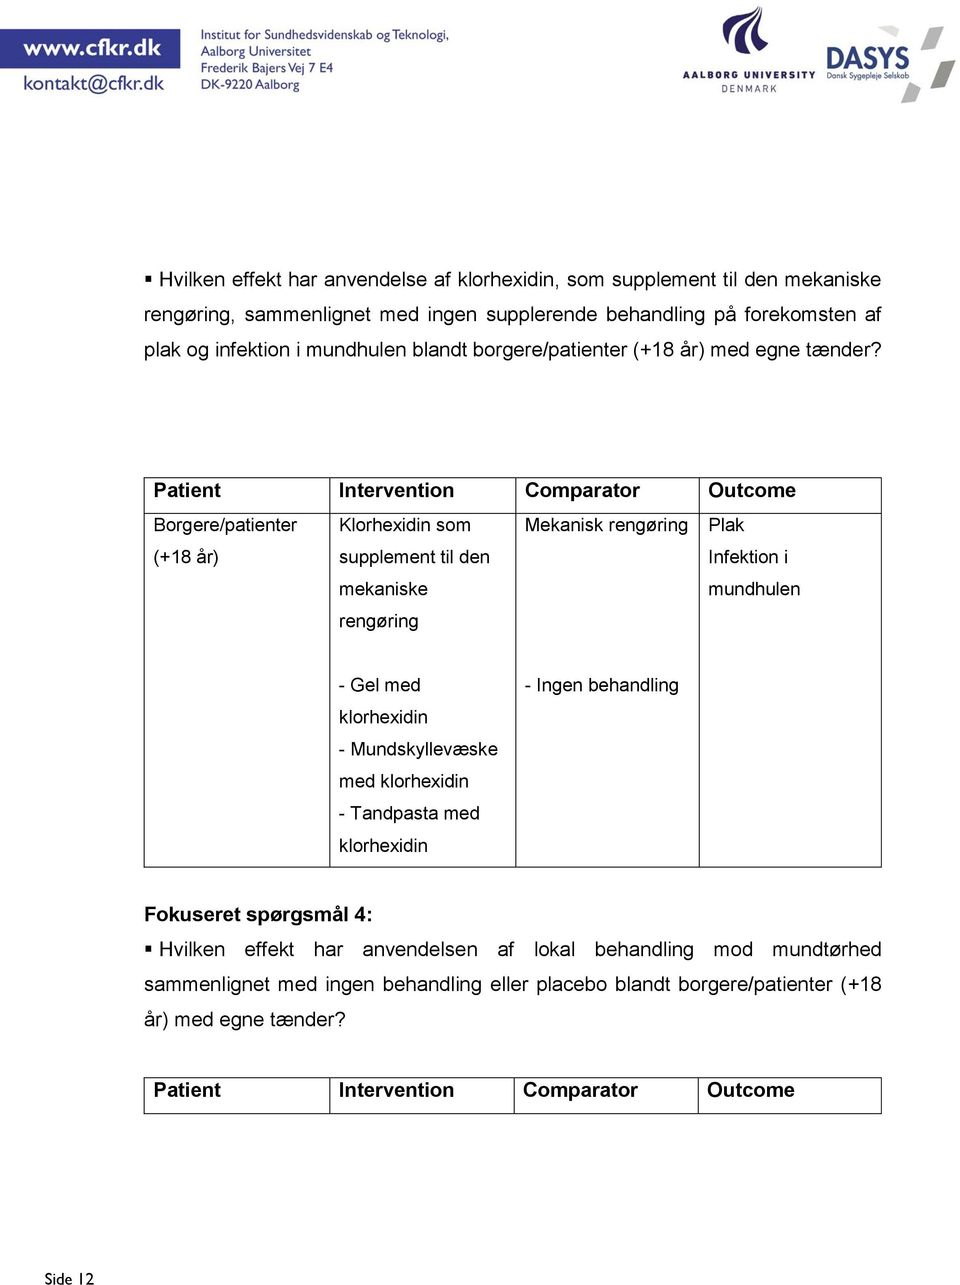 Patient Intervention Comparator Outcome Borgere/patienter (+18 år) Klorhexidin som supplement til den mekaniske rengøring Mekanisk rengøring Plak Infektion i mundhulen - Gel med